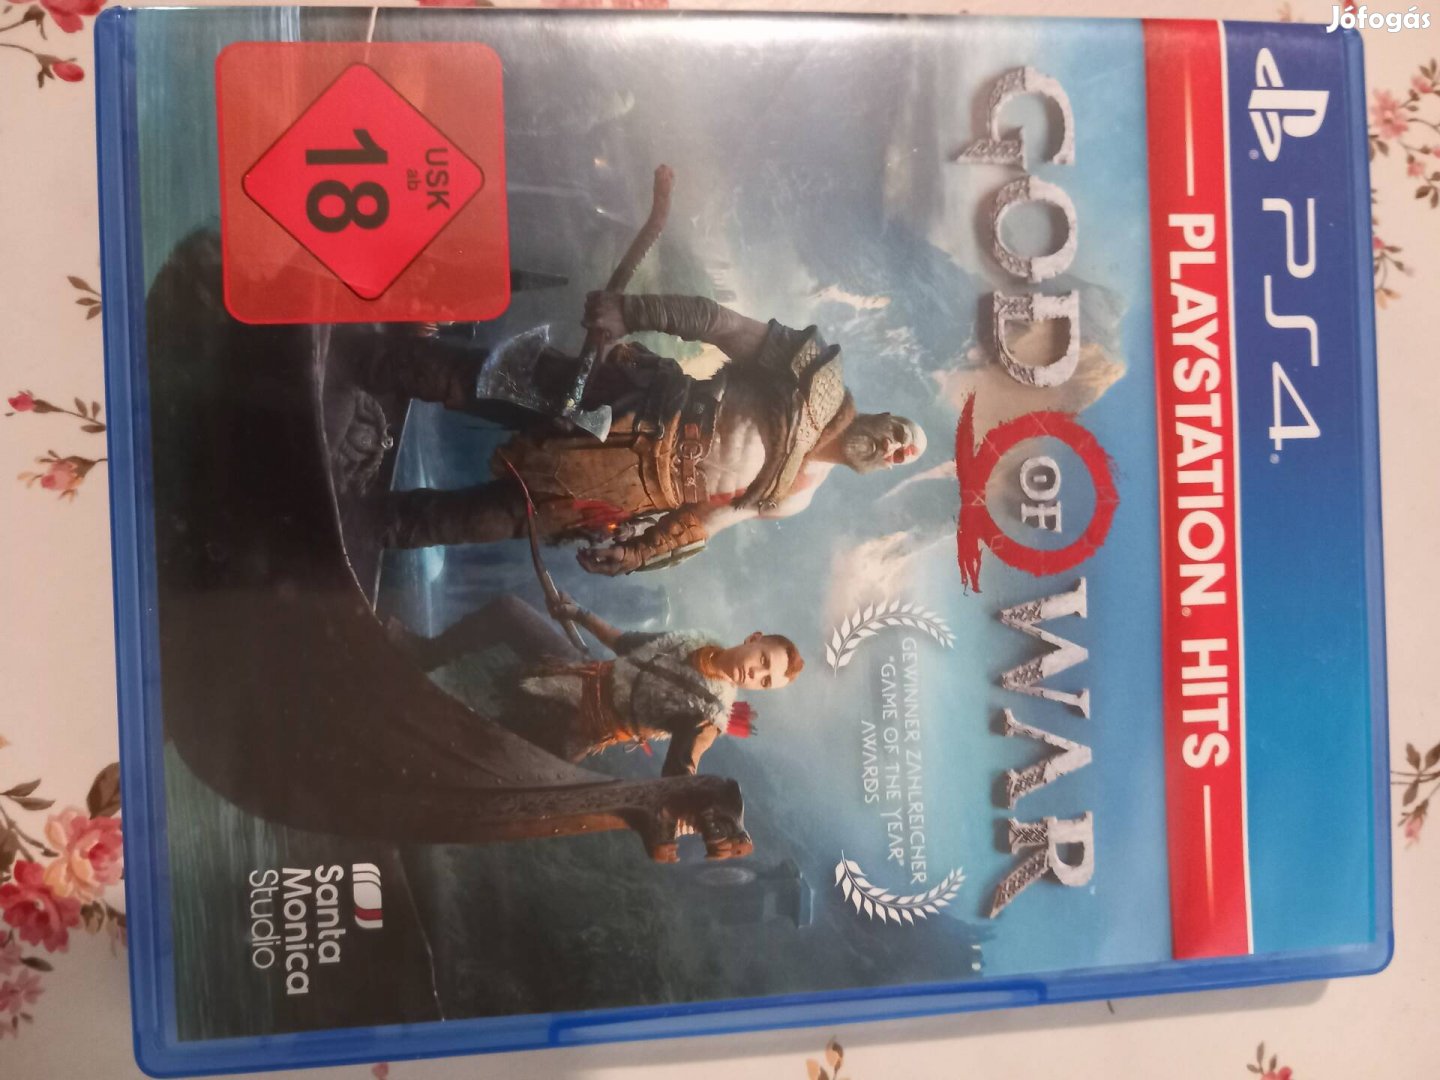 Gods of War Ps4 játék eladó. Új.